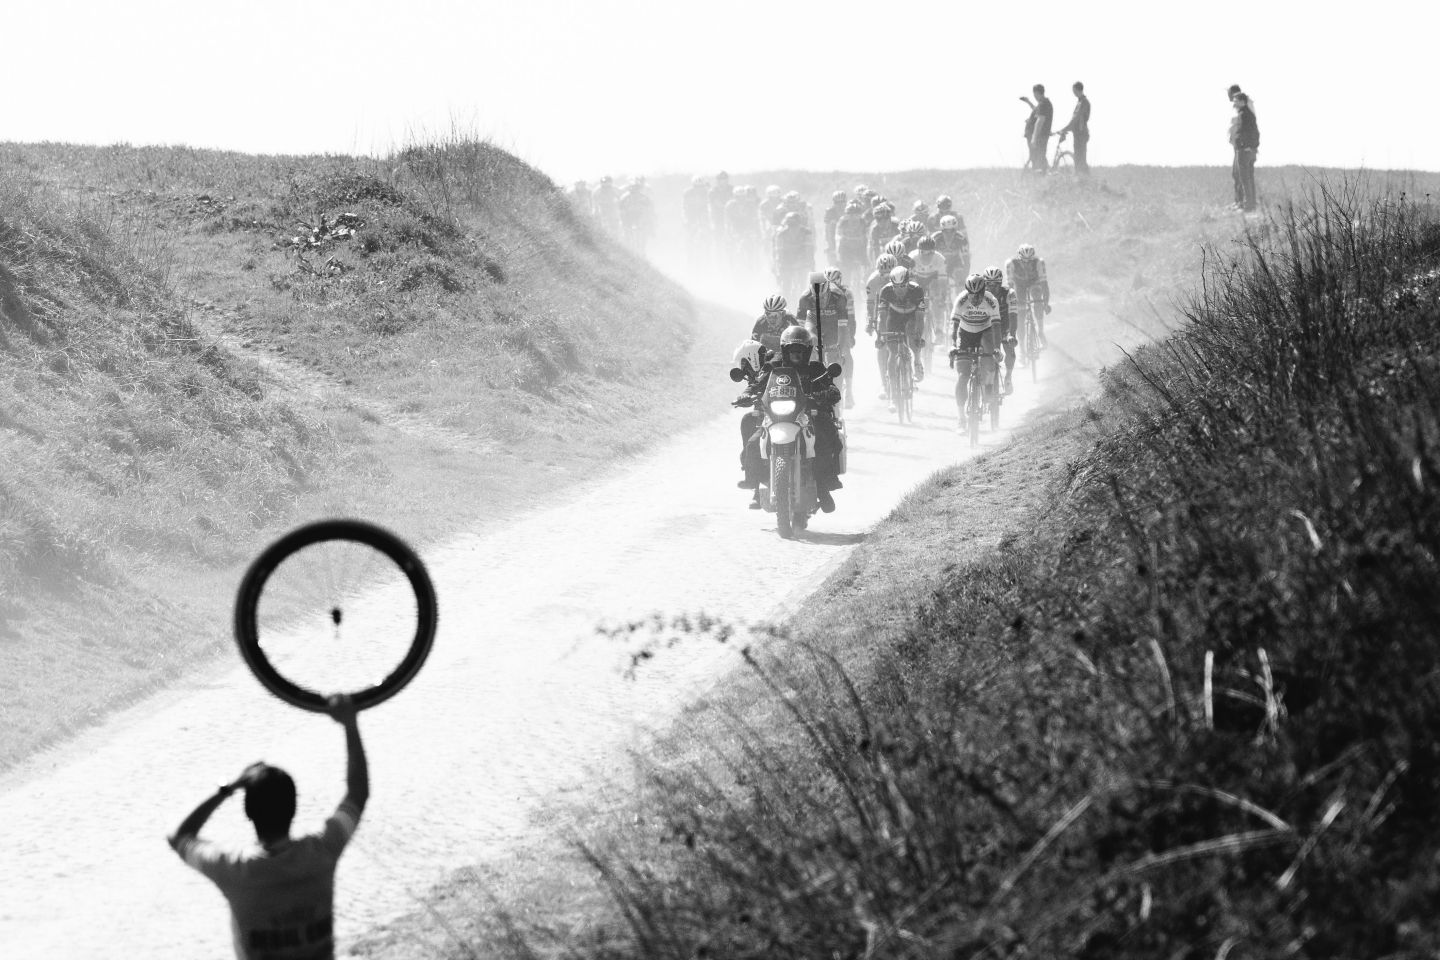 na trasie Paryż-Roubaix